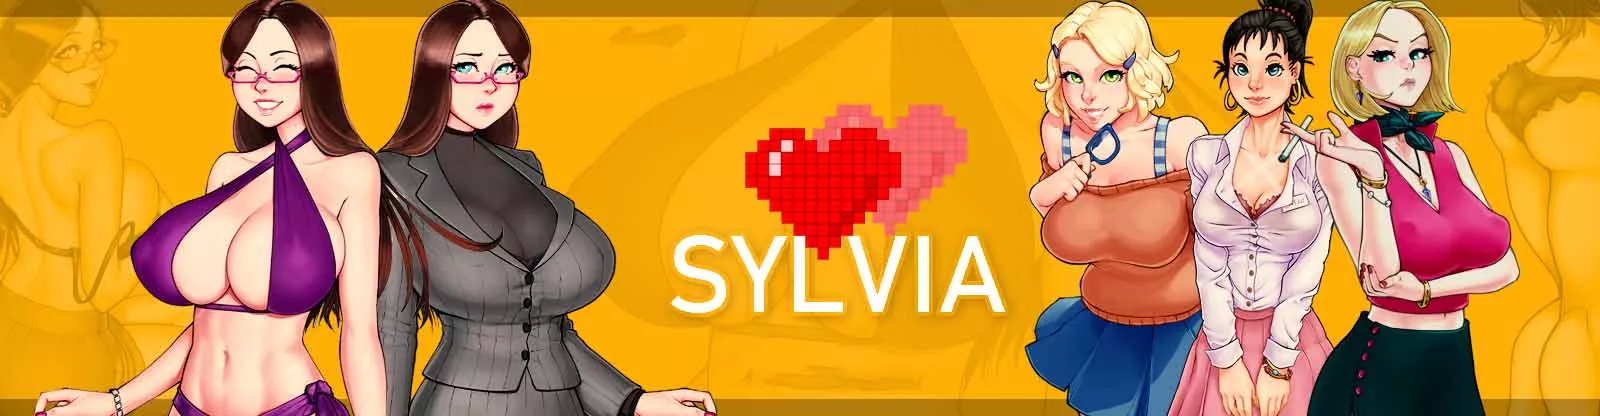 Game dewasa Sylvia 3d